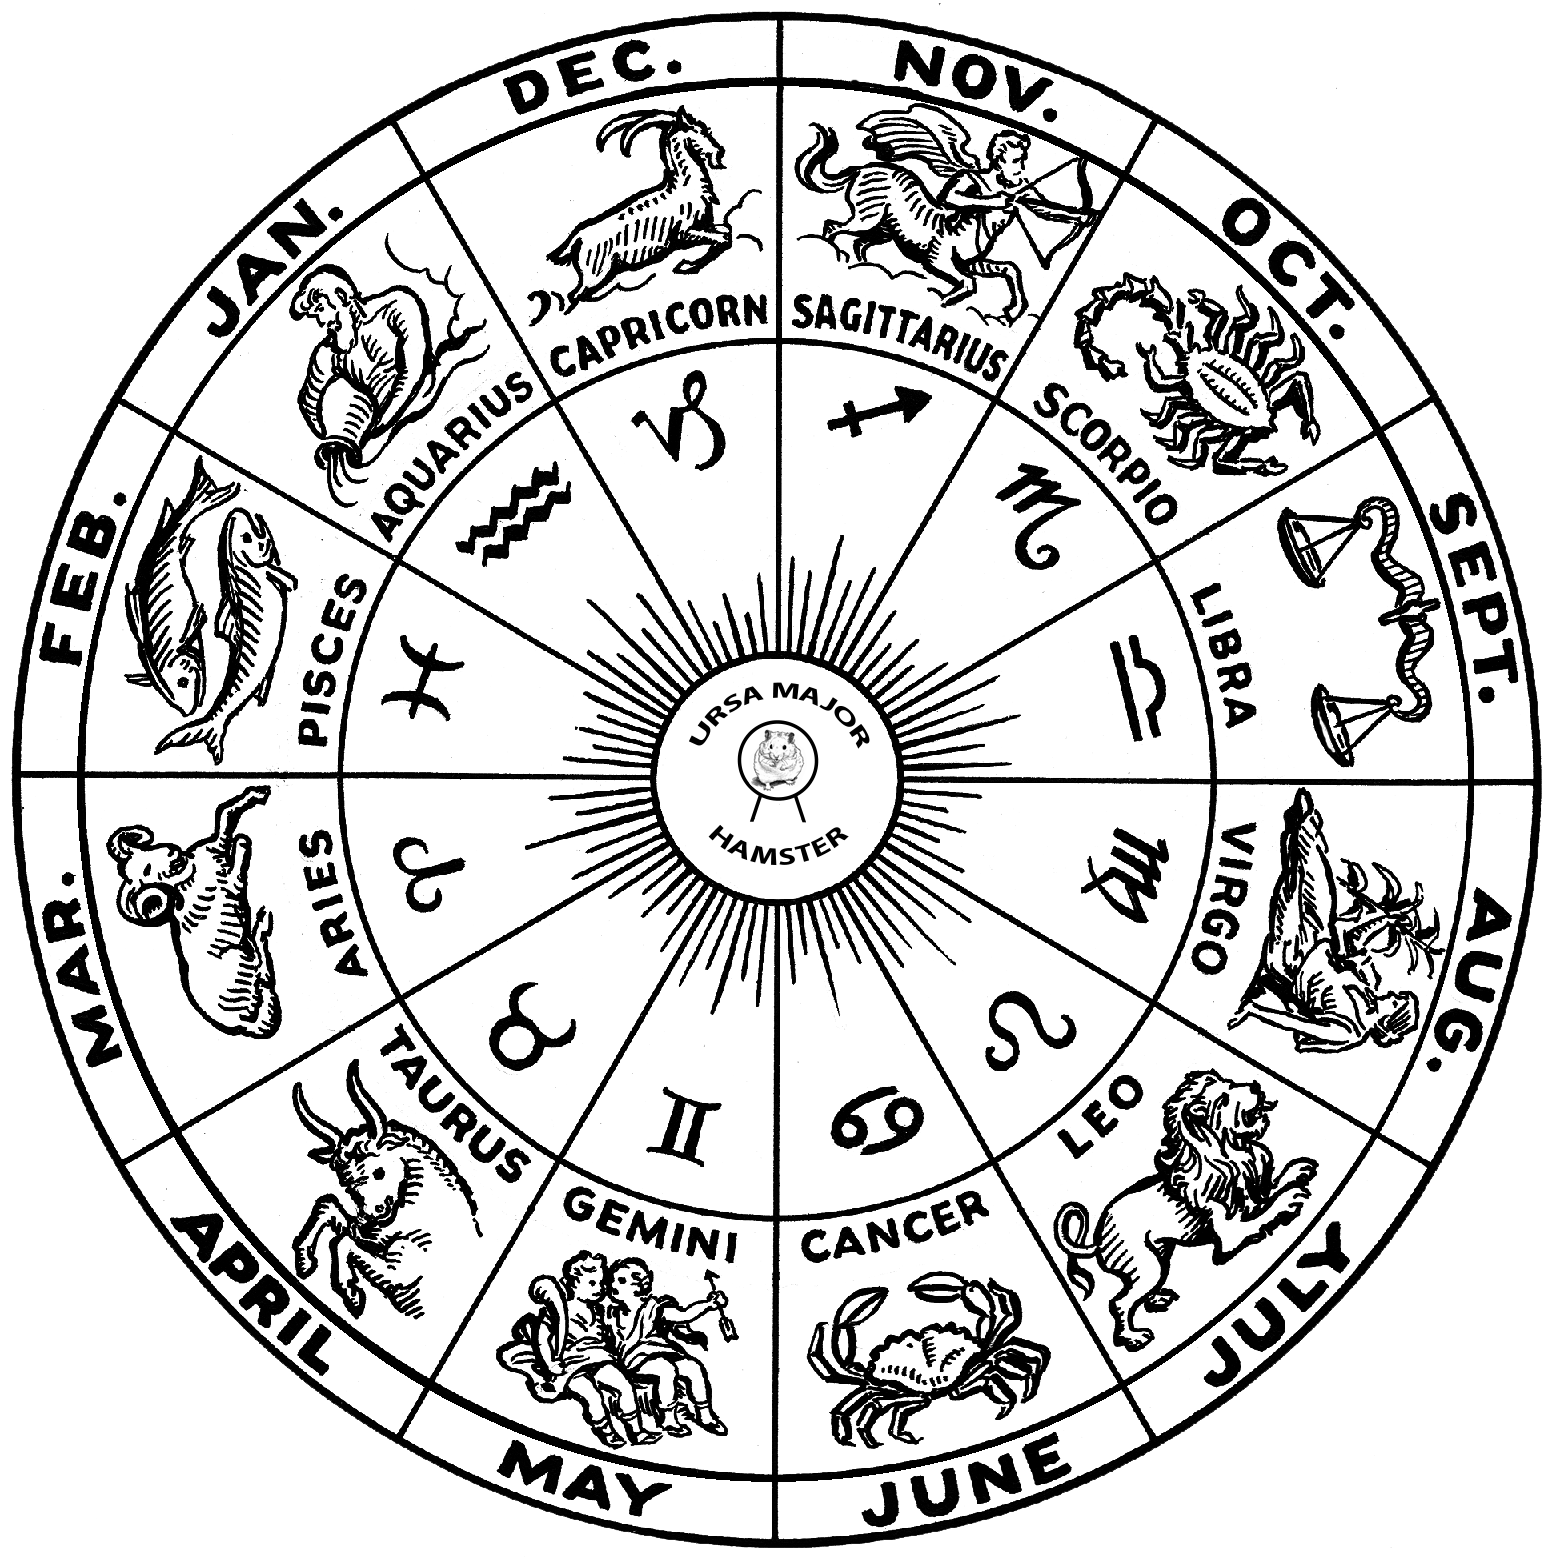 TThe Zodiac Wheel with Ursa Major Hamster in the center